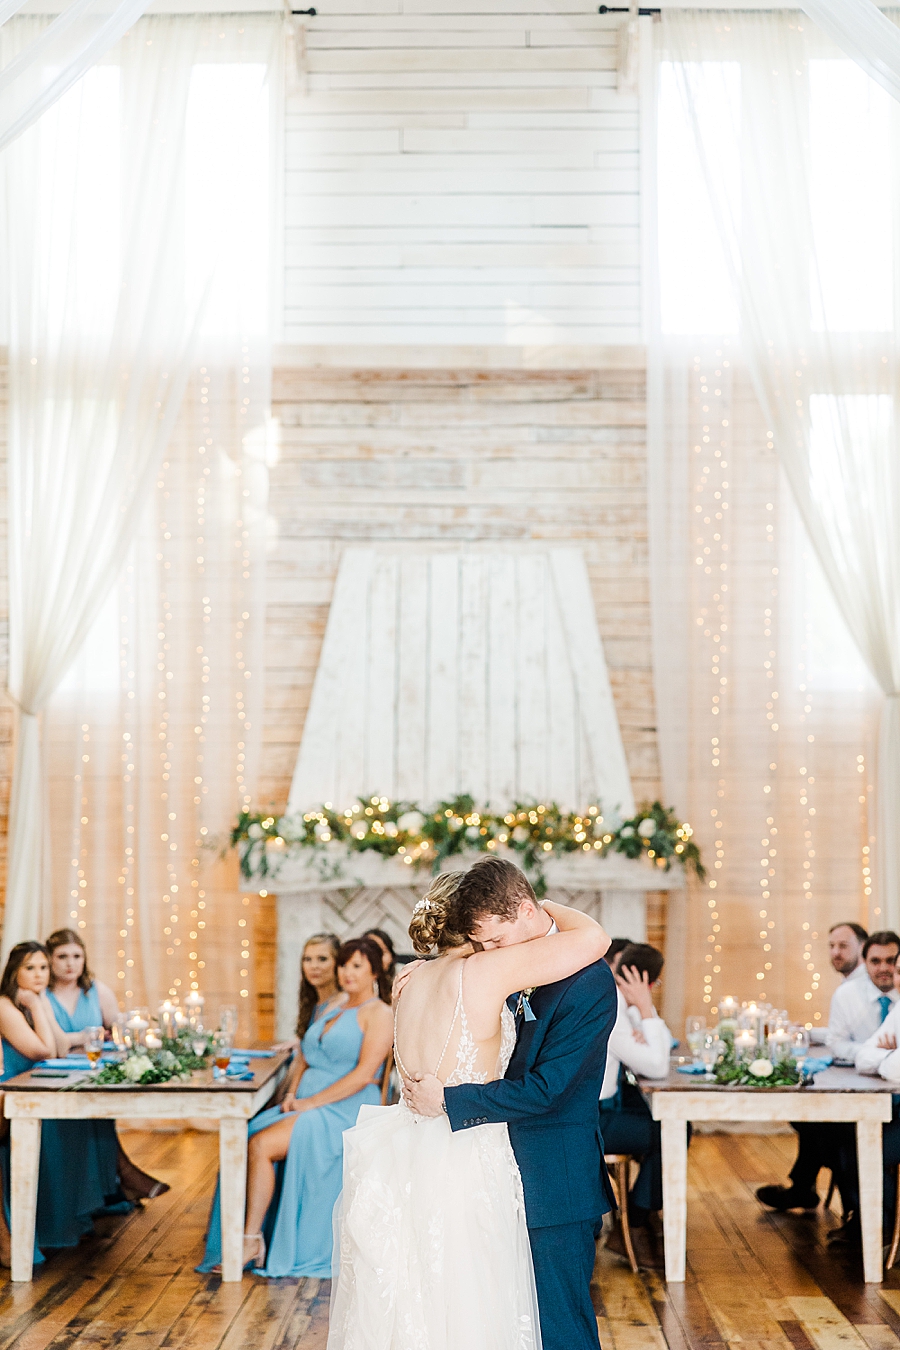 Bride and groom hug while dancing at wedding by Amanda May Photos